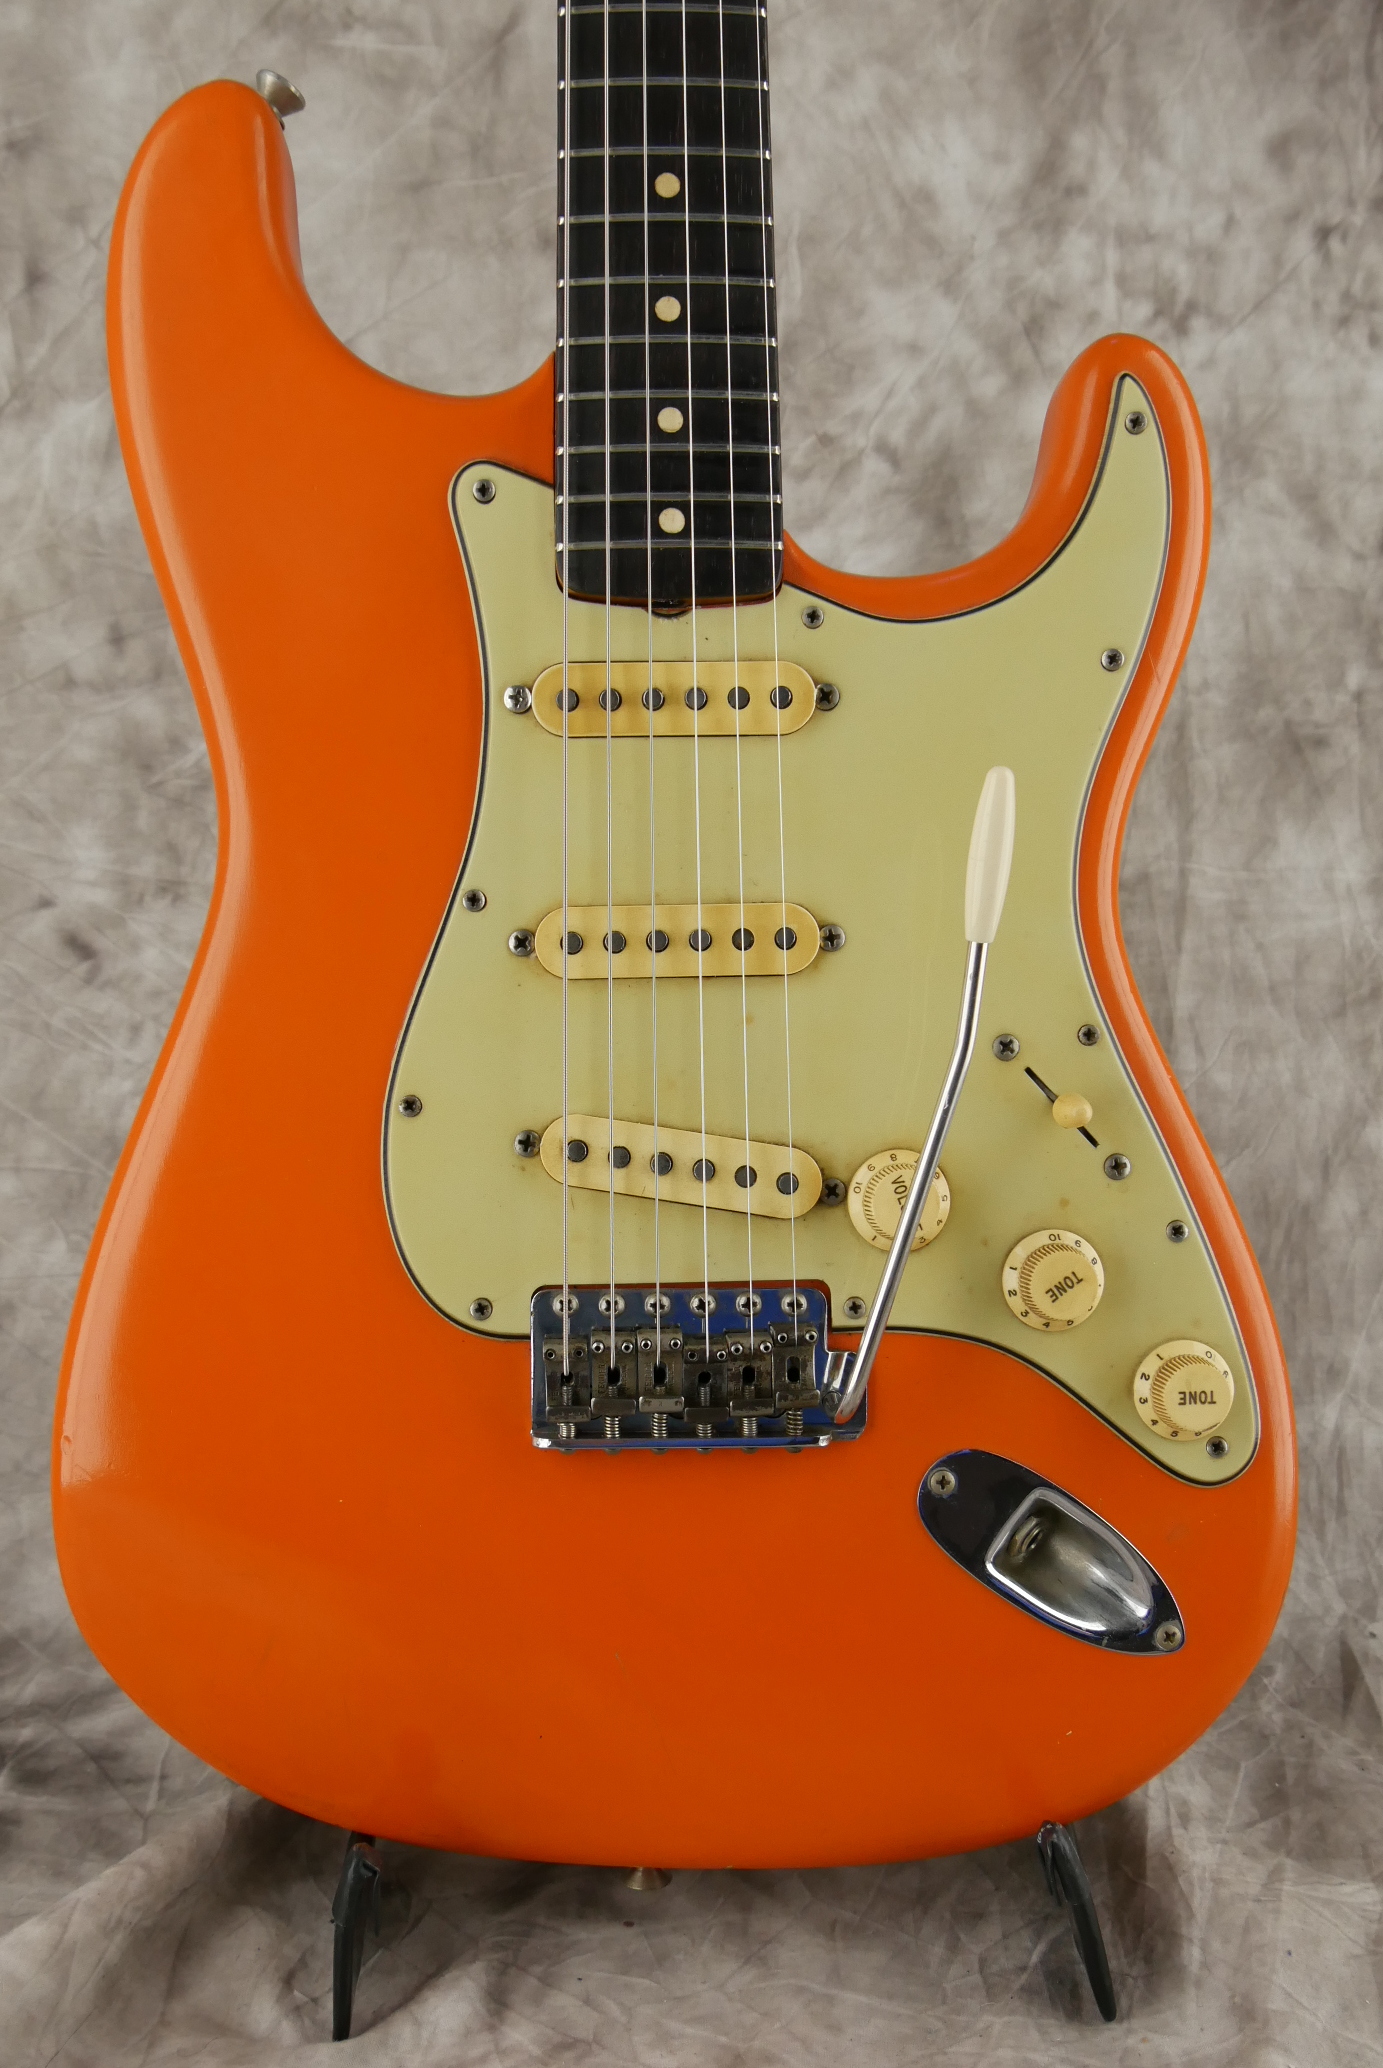 Fender-Stratocaster-1964-orange-refinish-002.JPG